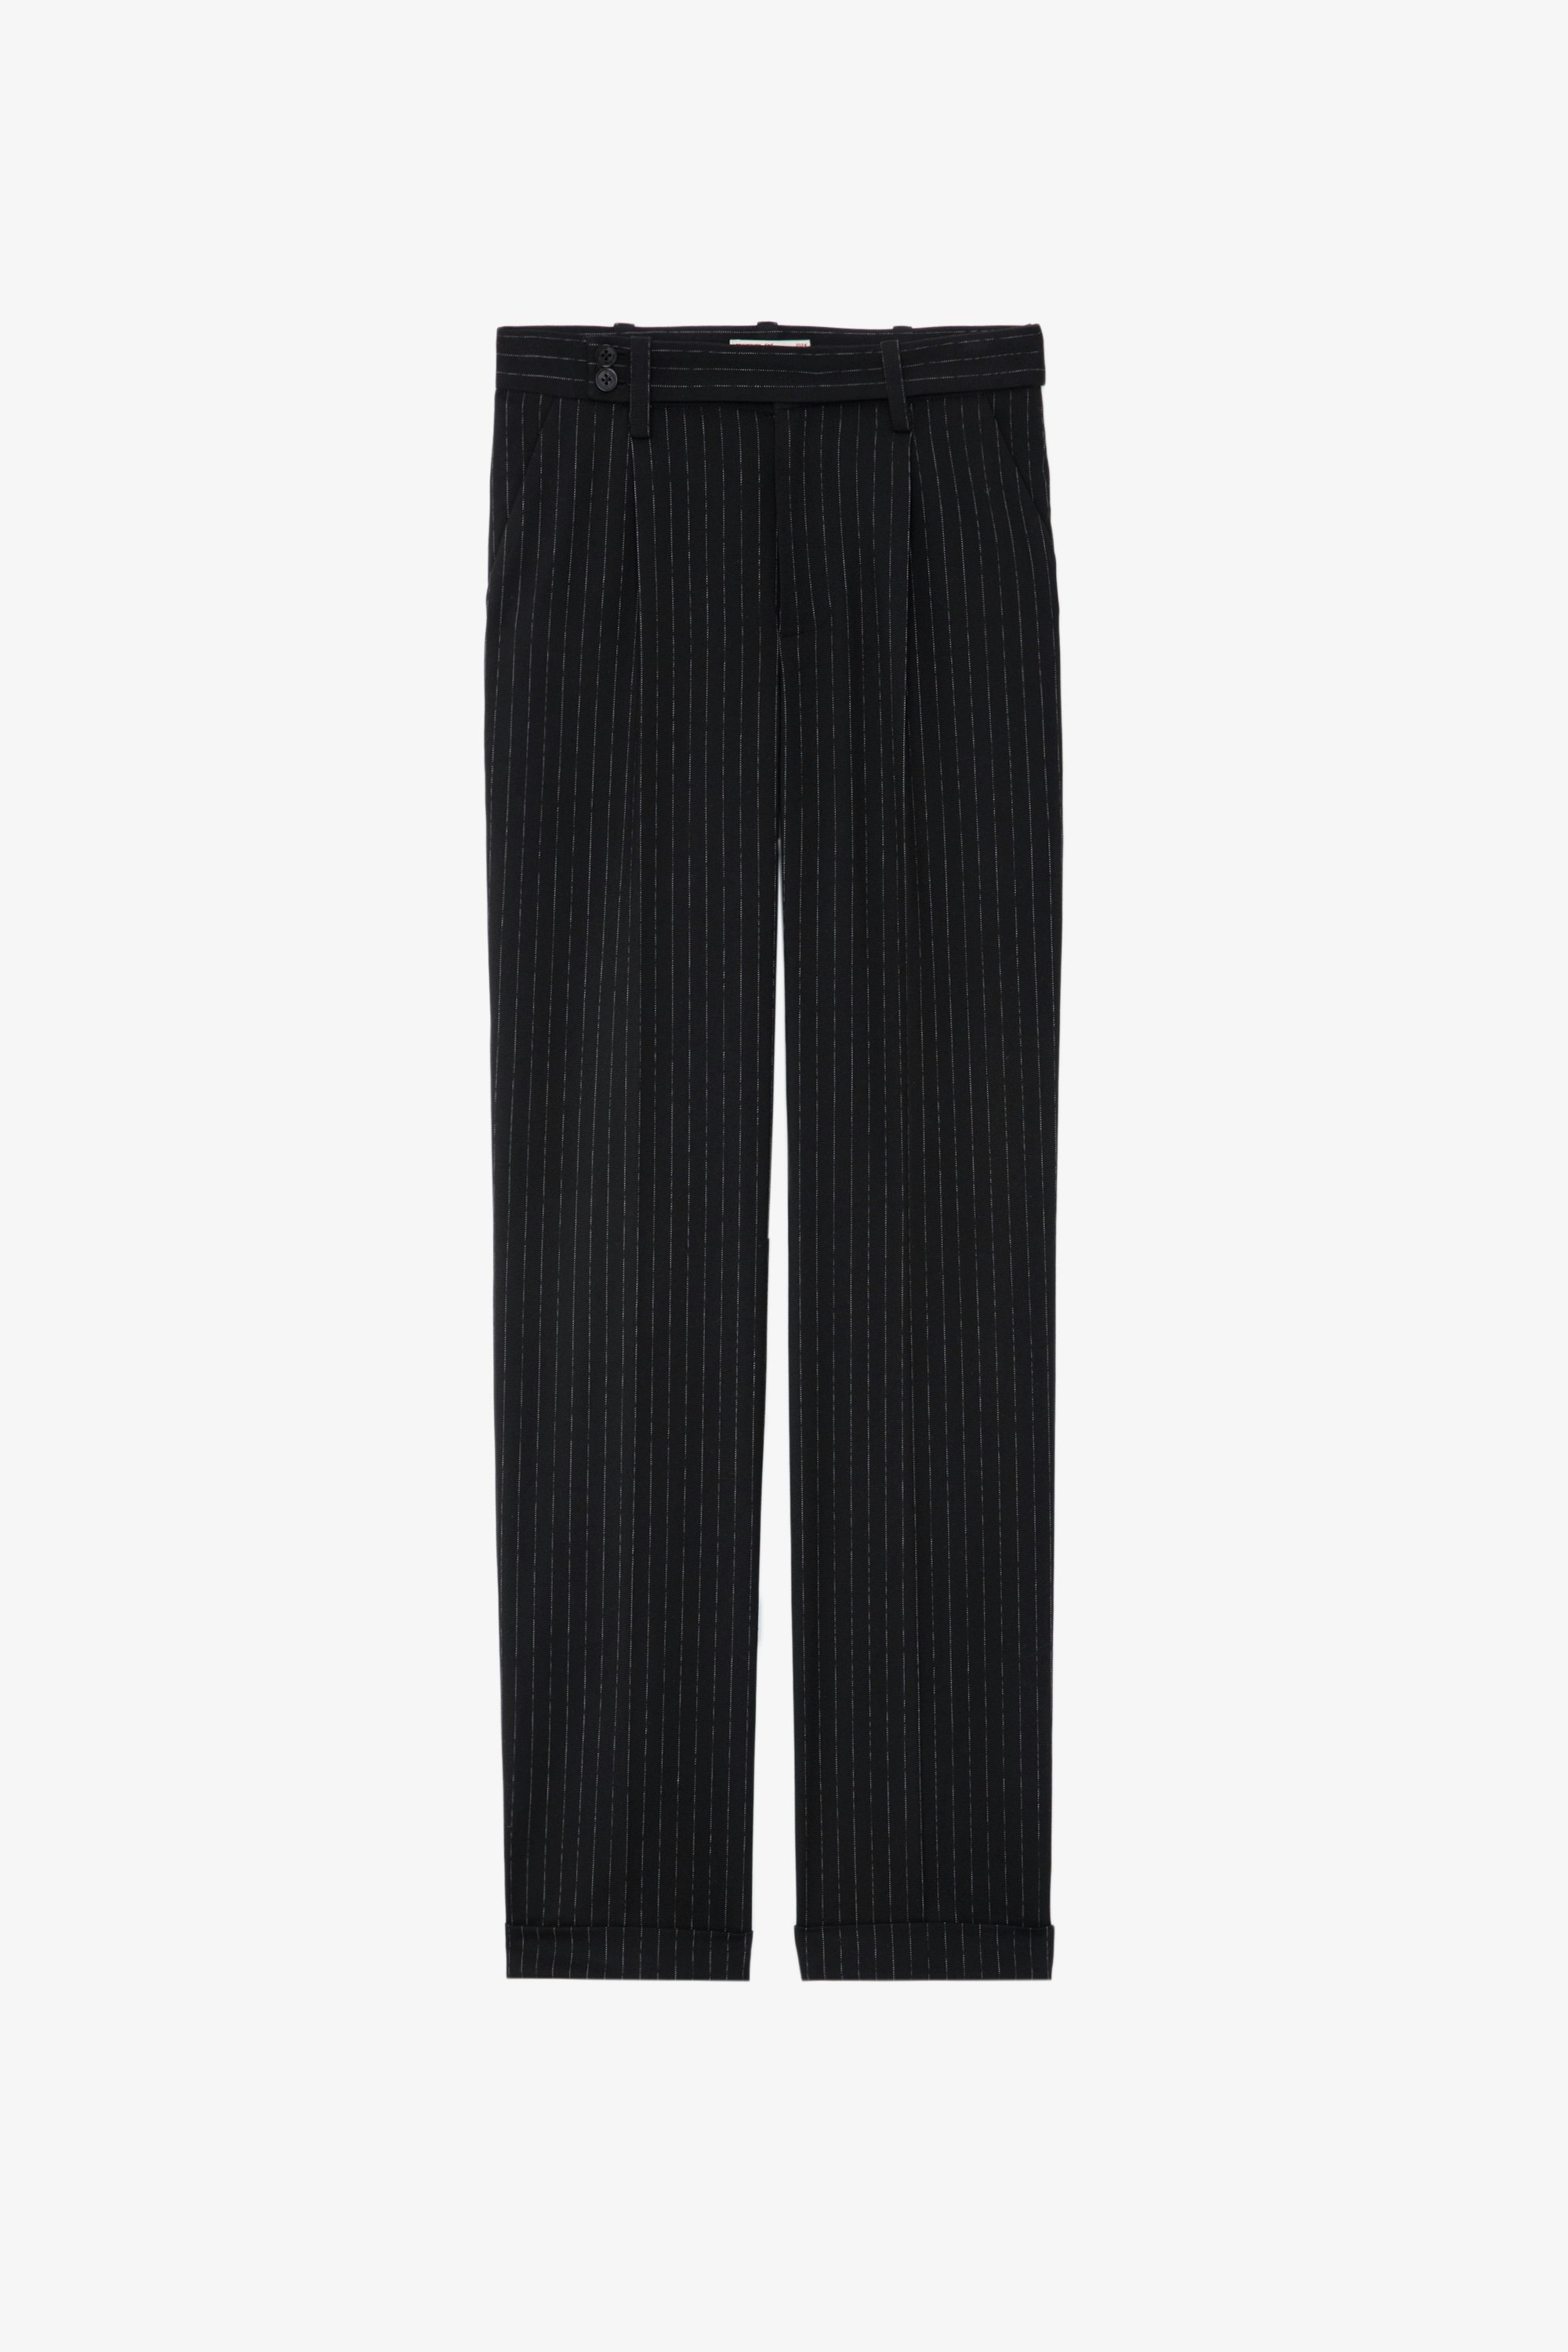 Pantalon Pura - Pantalon de tailleur large noir à fines rayures et poches.